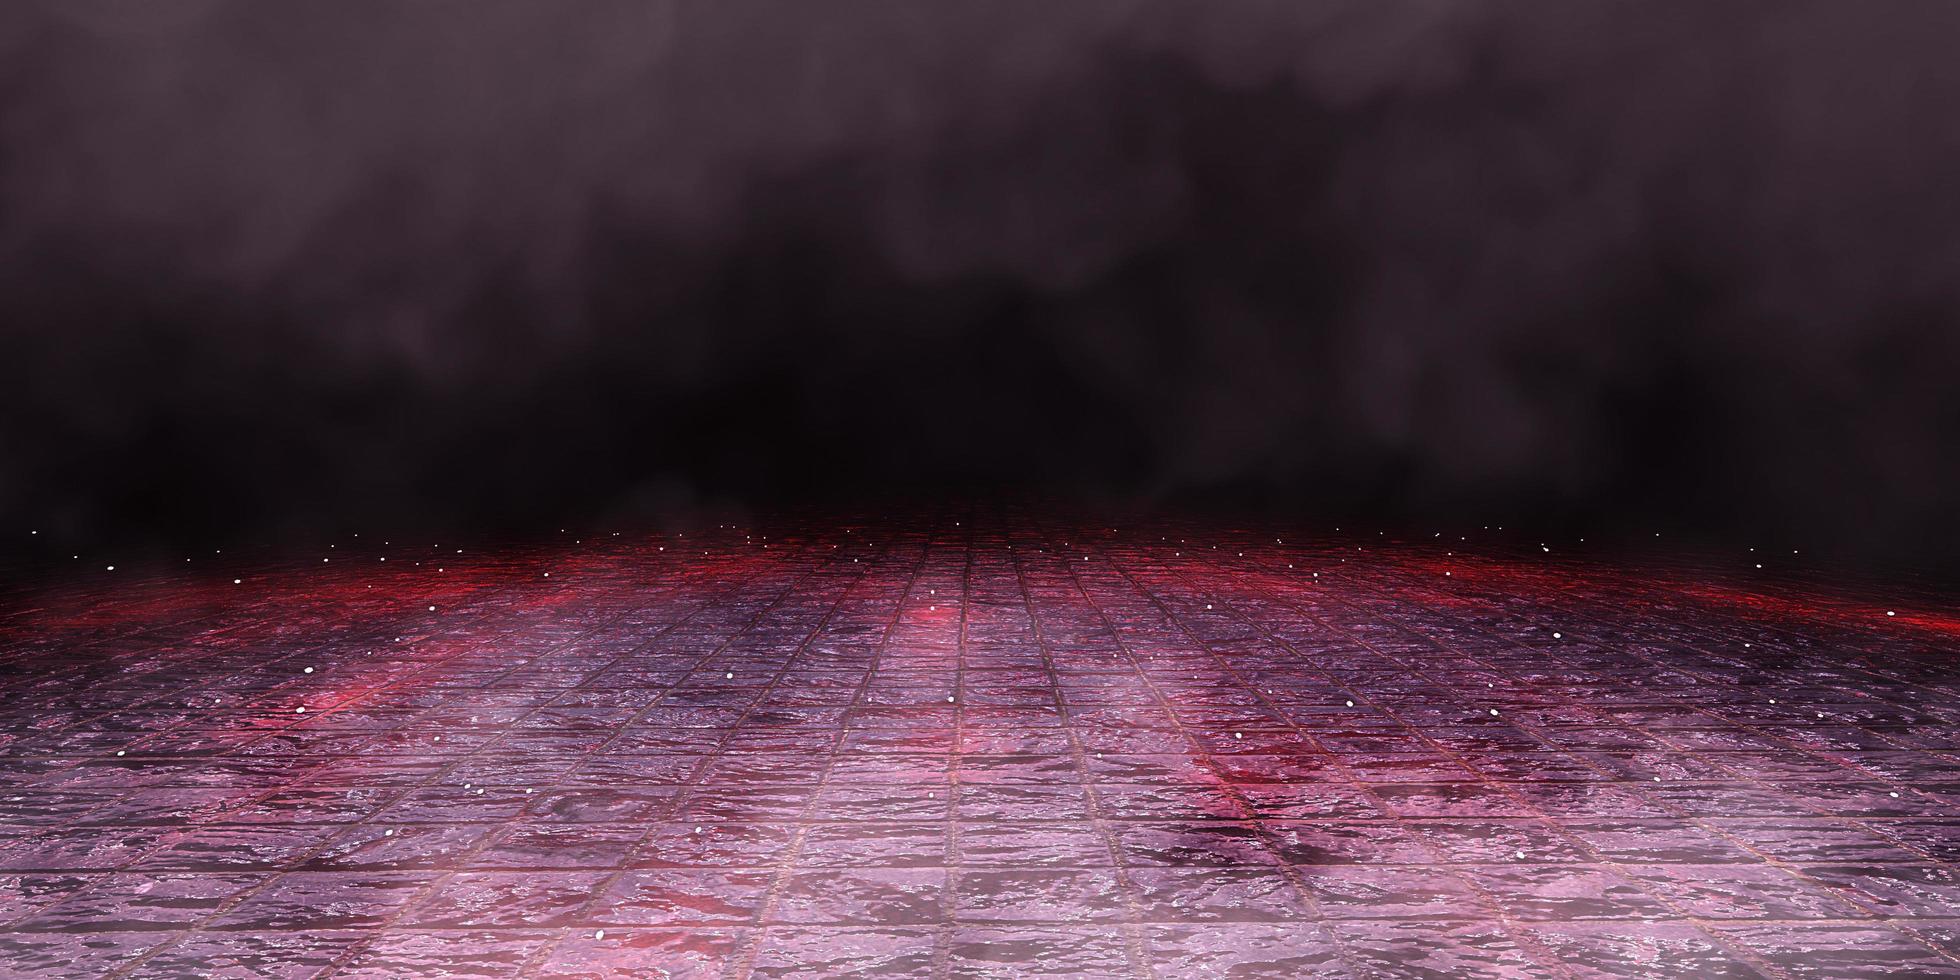 piso de piedra fondo de escena abstracto oscuro pavimento humo smog fondo de terror ilustración 3d foto